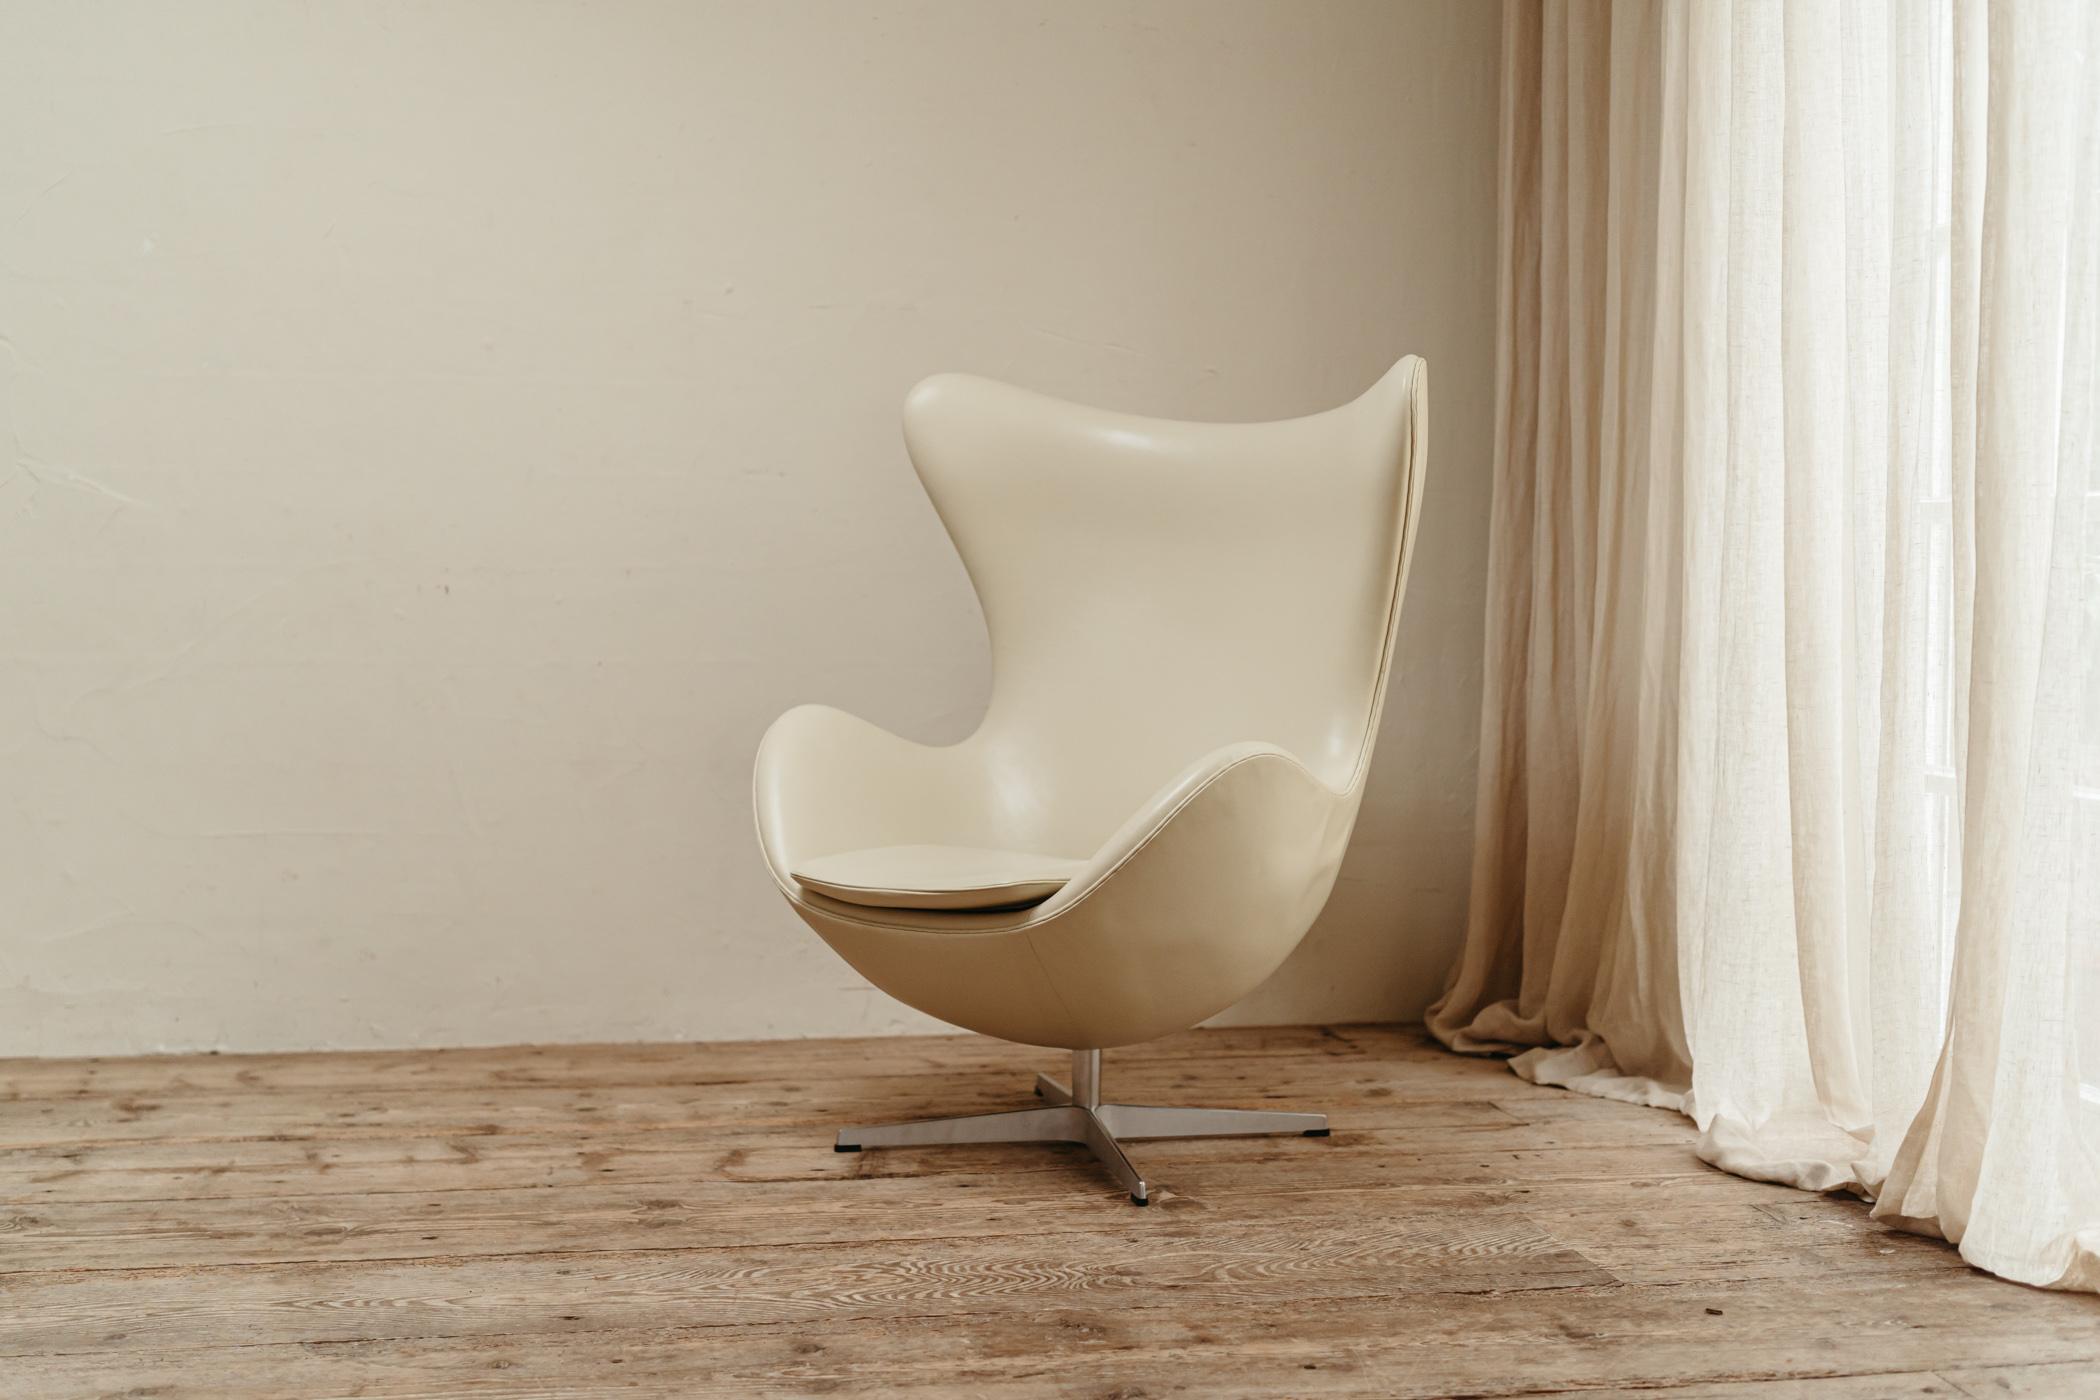 Dies ist der Egg, Modell 3316, entworfen von Arne Jacobsen und hergestellt von Fritz Hansen. Der Stuhl hat eine neue Polsterung in cremefarbenem Leder, in sehr gutem Zustand.